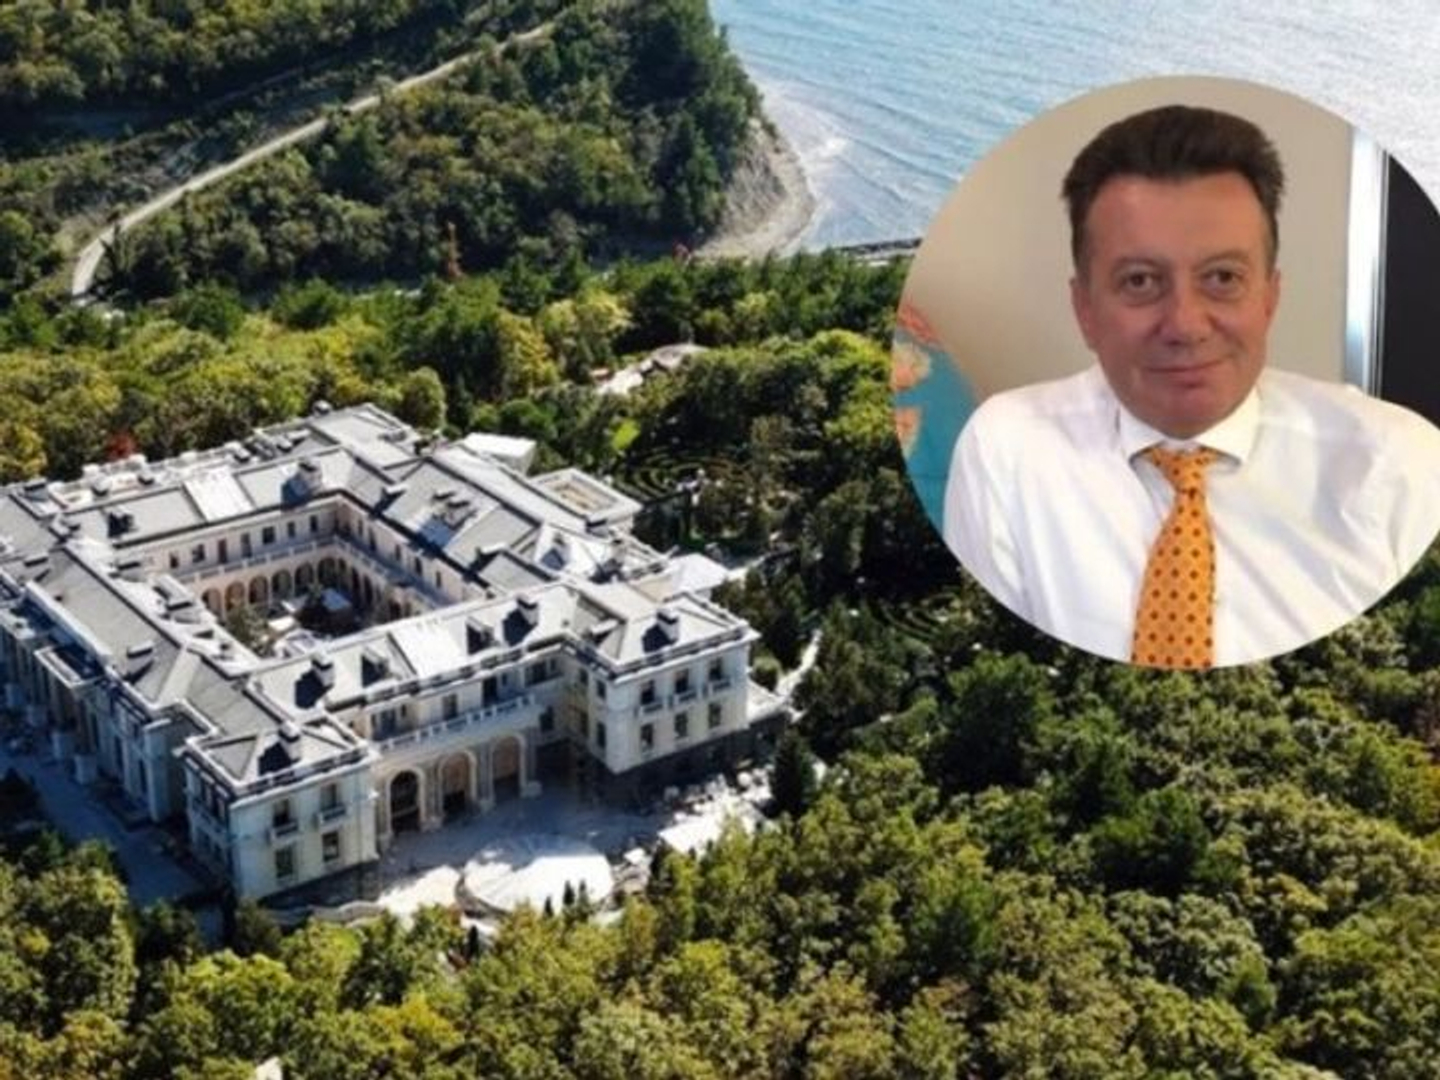 Архитектора Ланфранко Чирилло, спроектировавшего дворец Путина в Геленджике, назначили на должность старшего вице-президента Сбербанка